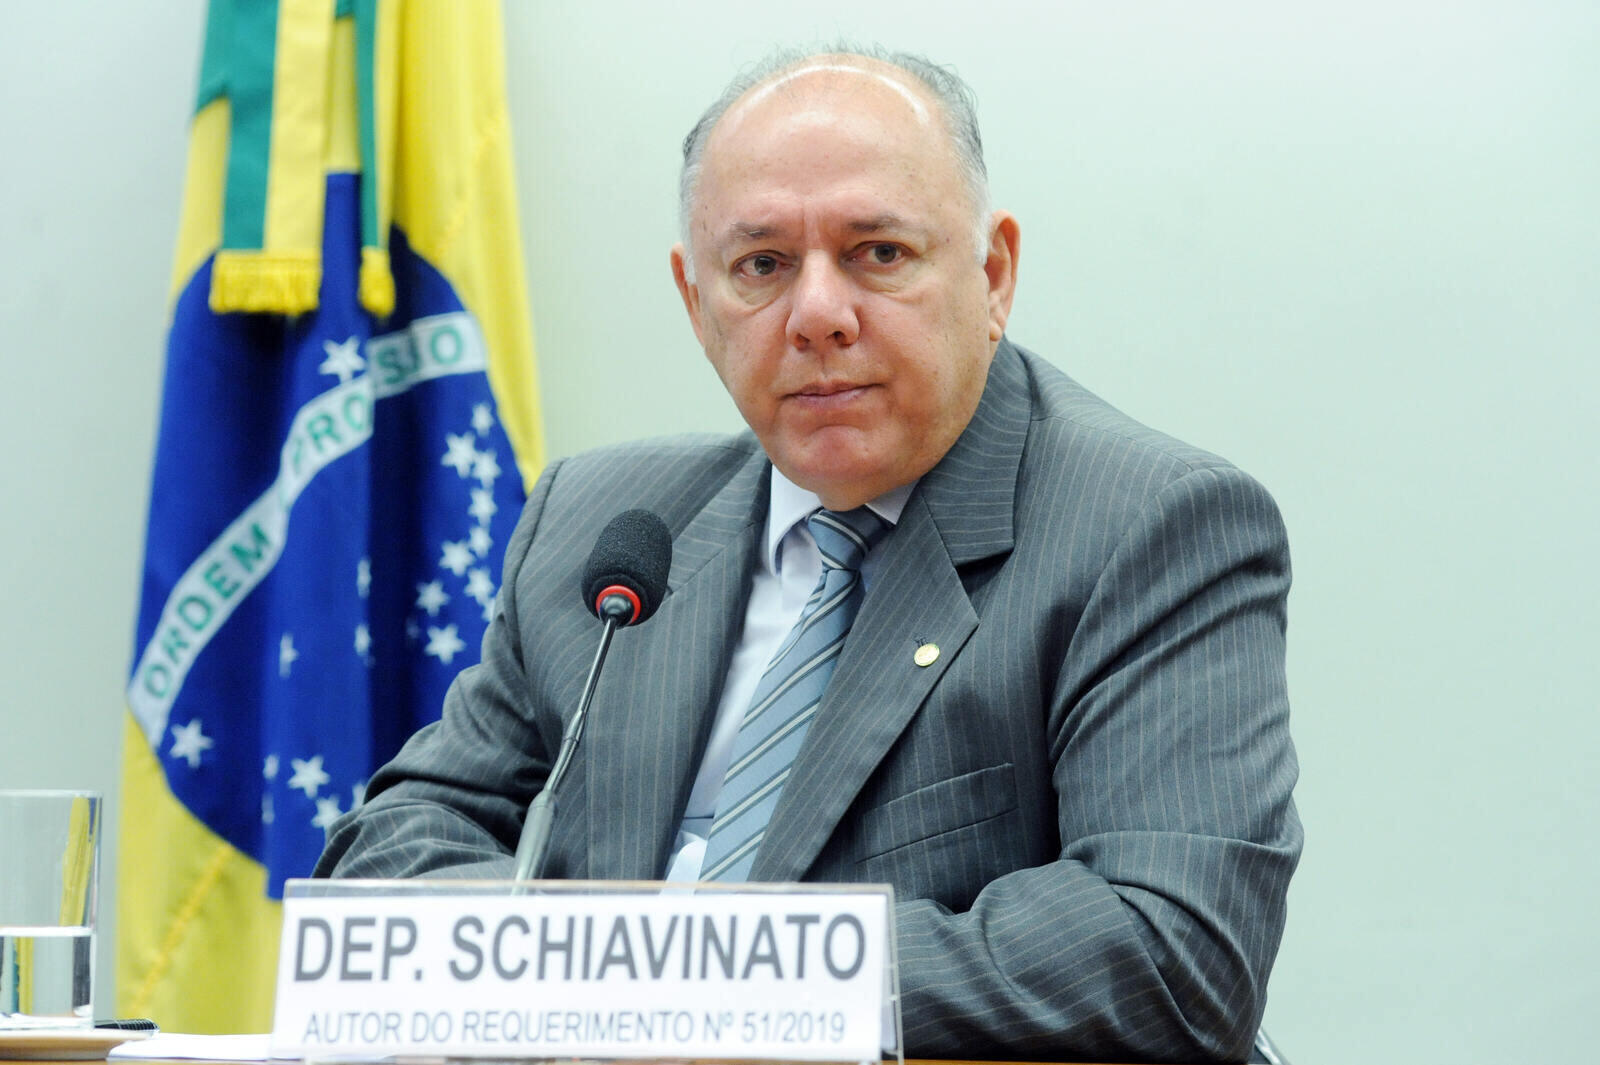 Schiavinato é o primeiro deputado federal vítima da covid-19